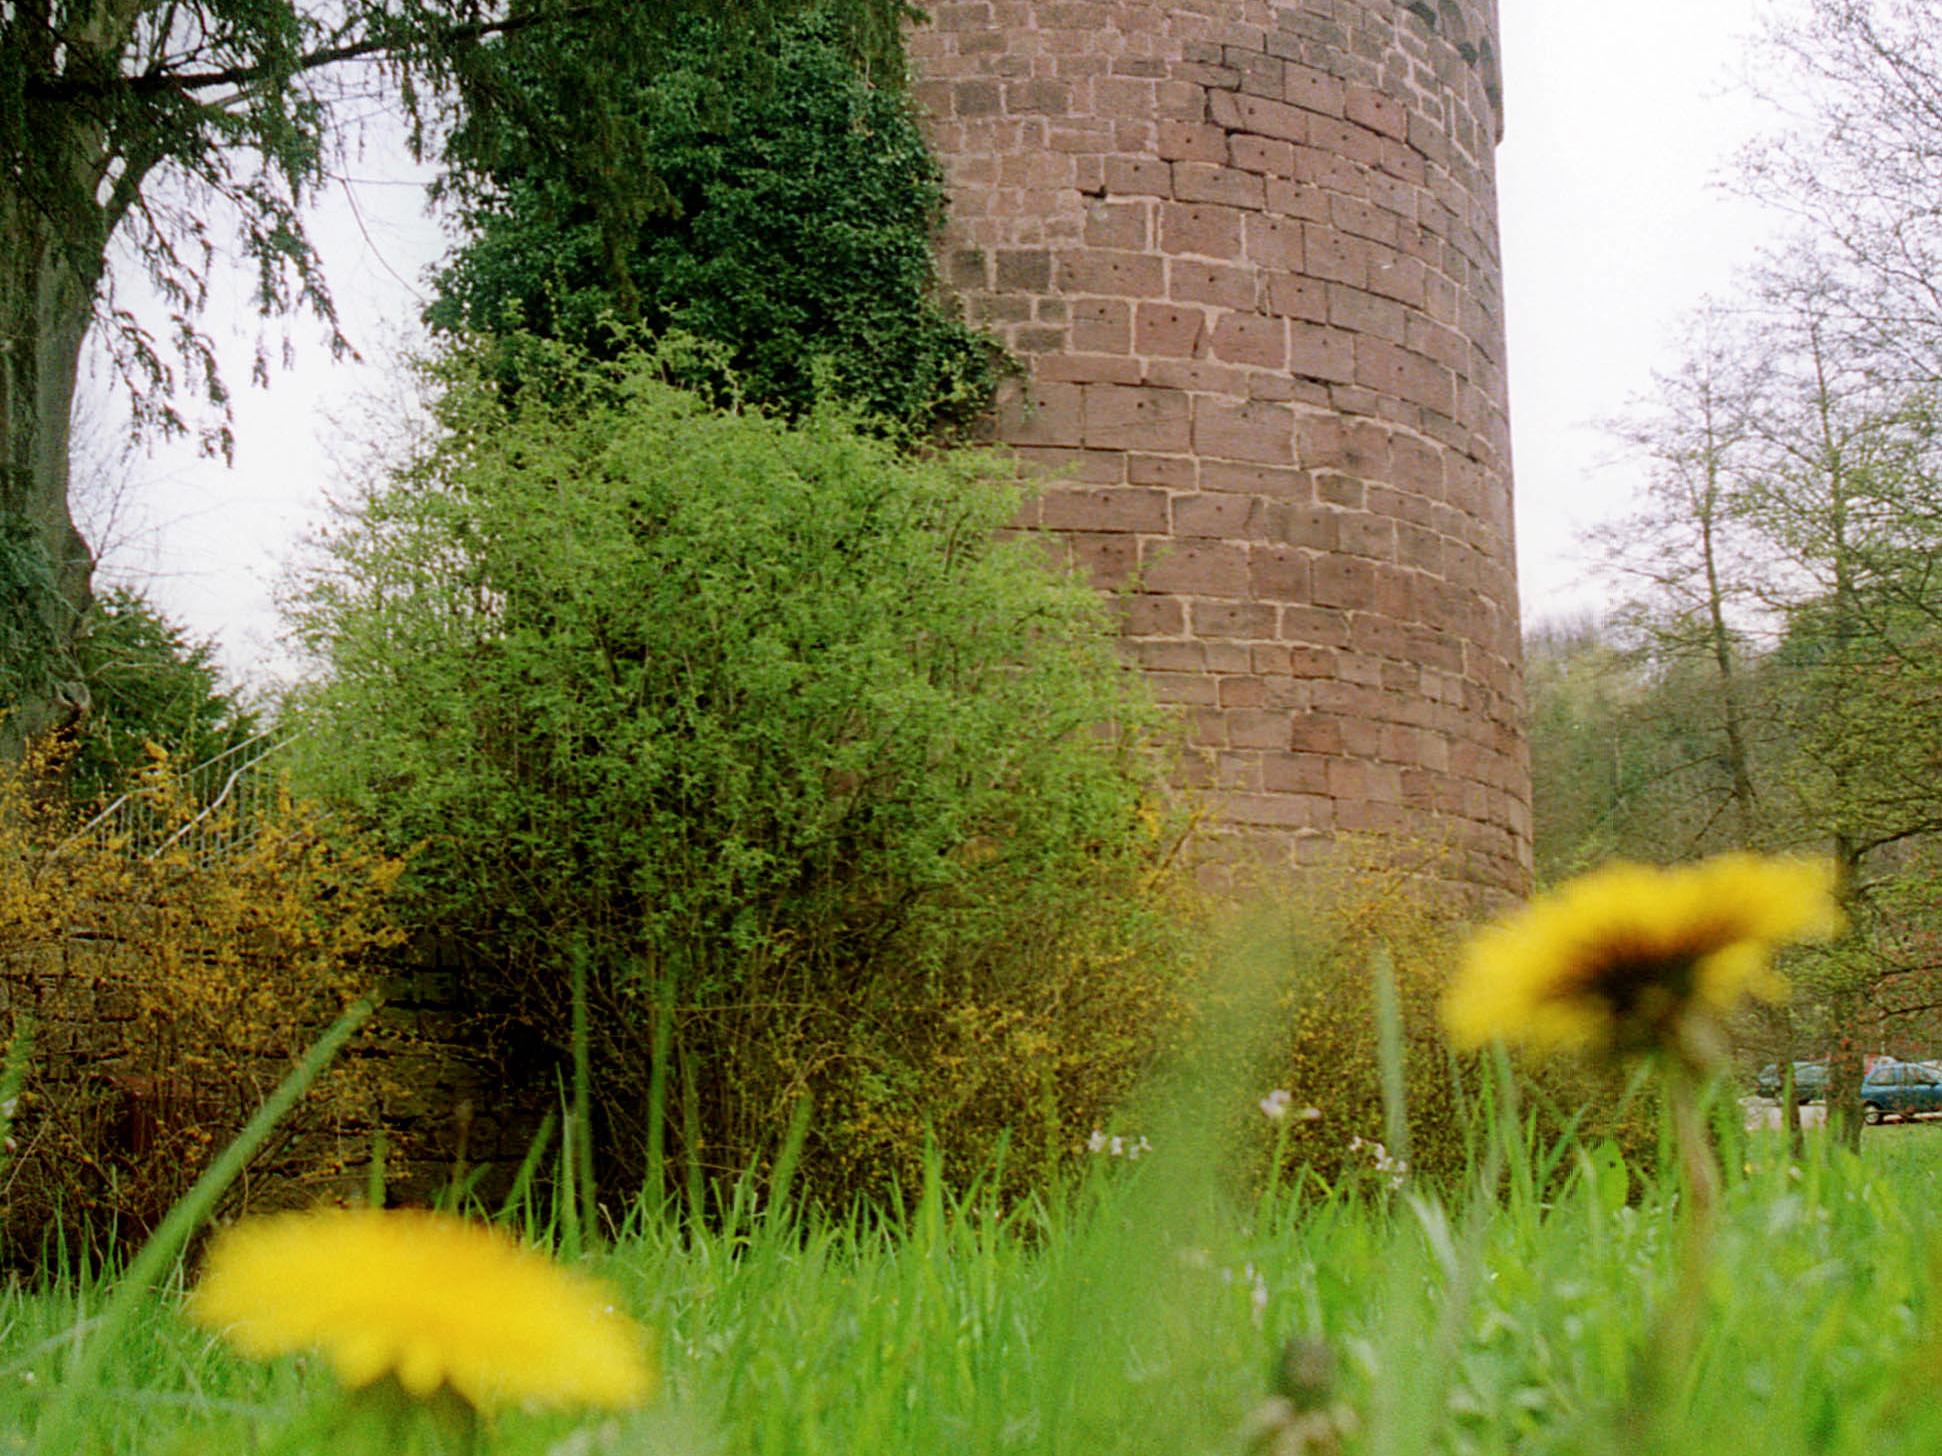 Turm Turm Kerpen im HIntergrund, Löwenzahn in Nahaufnahme im Vordergrund